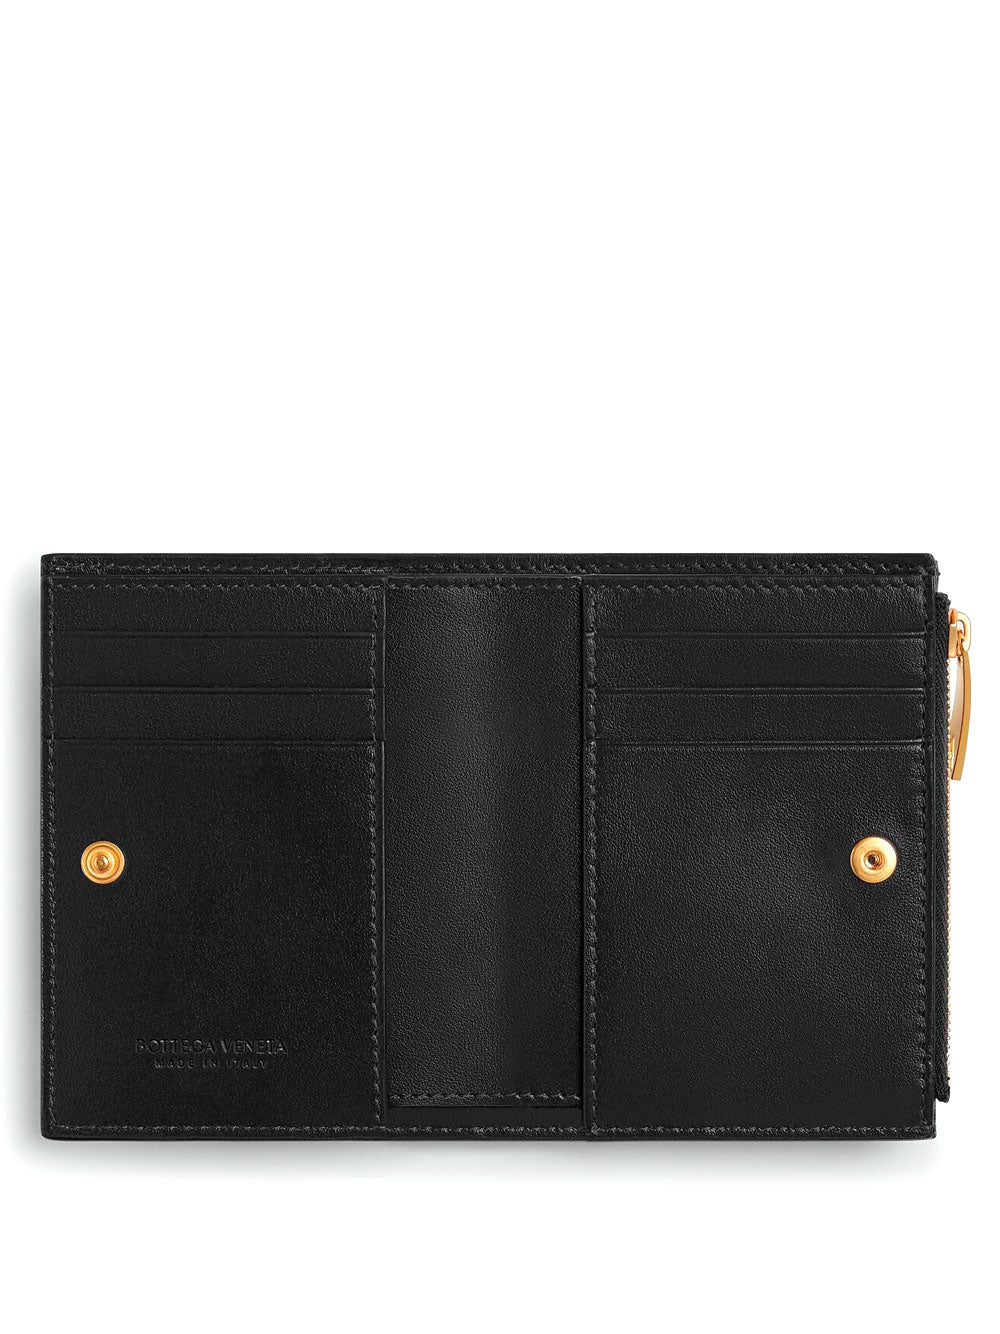 Small Intrecciato wallet